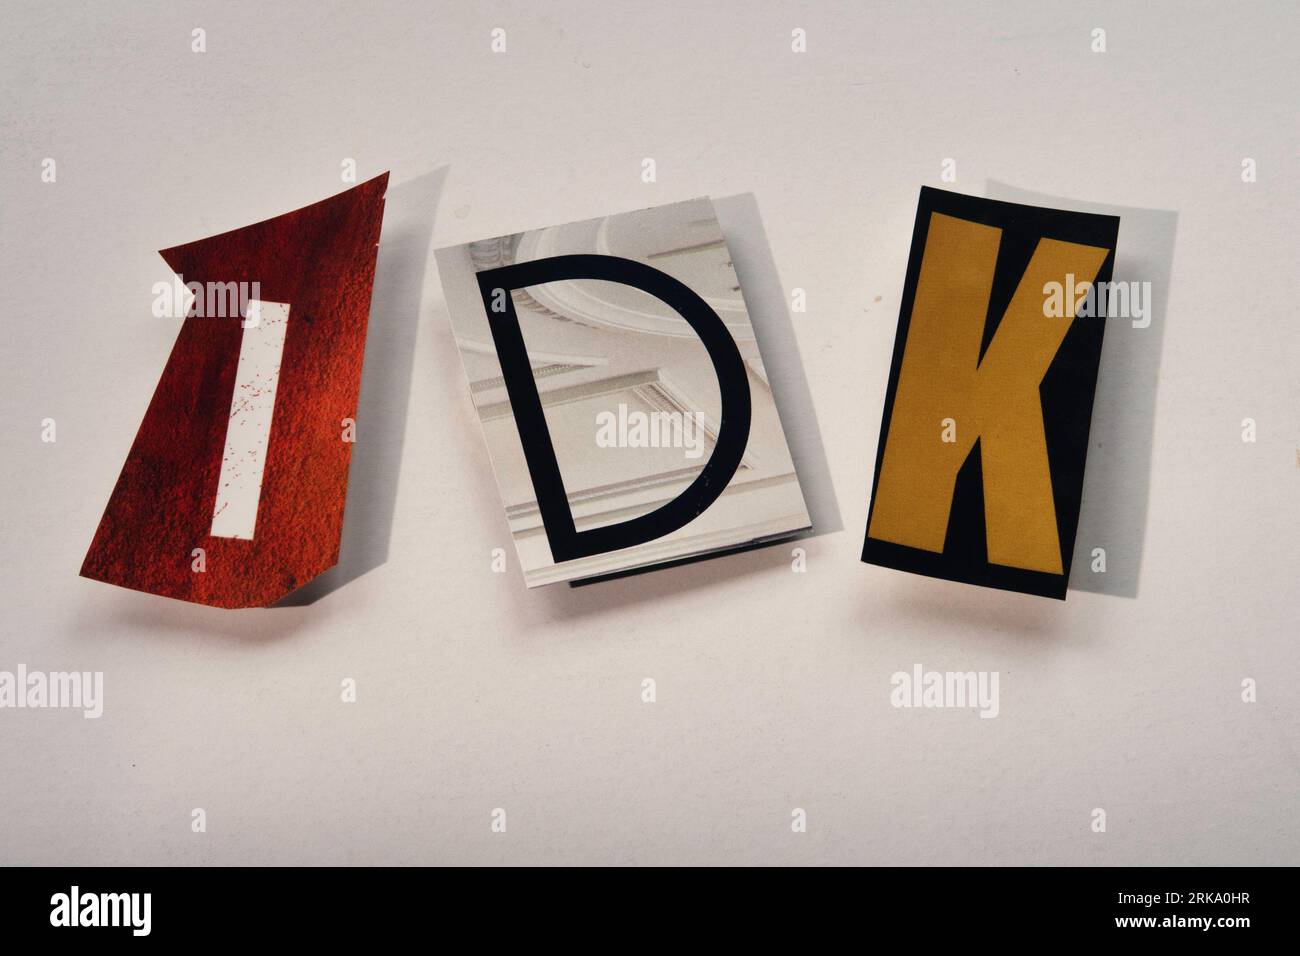 L'acronyme 'IDK' argot utilisant des lettres de papier découpées dans la typographie d'effet de note de rançon, USA Banque D'Images